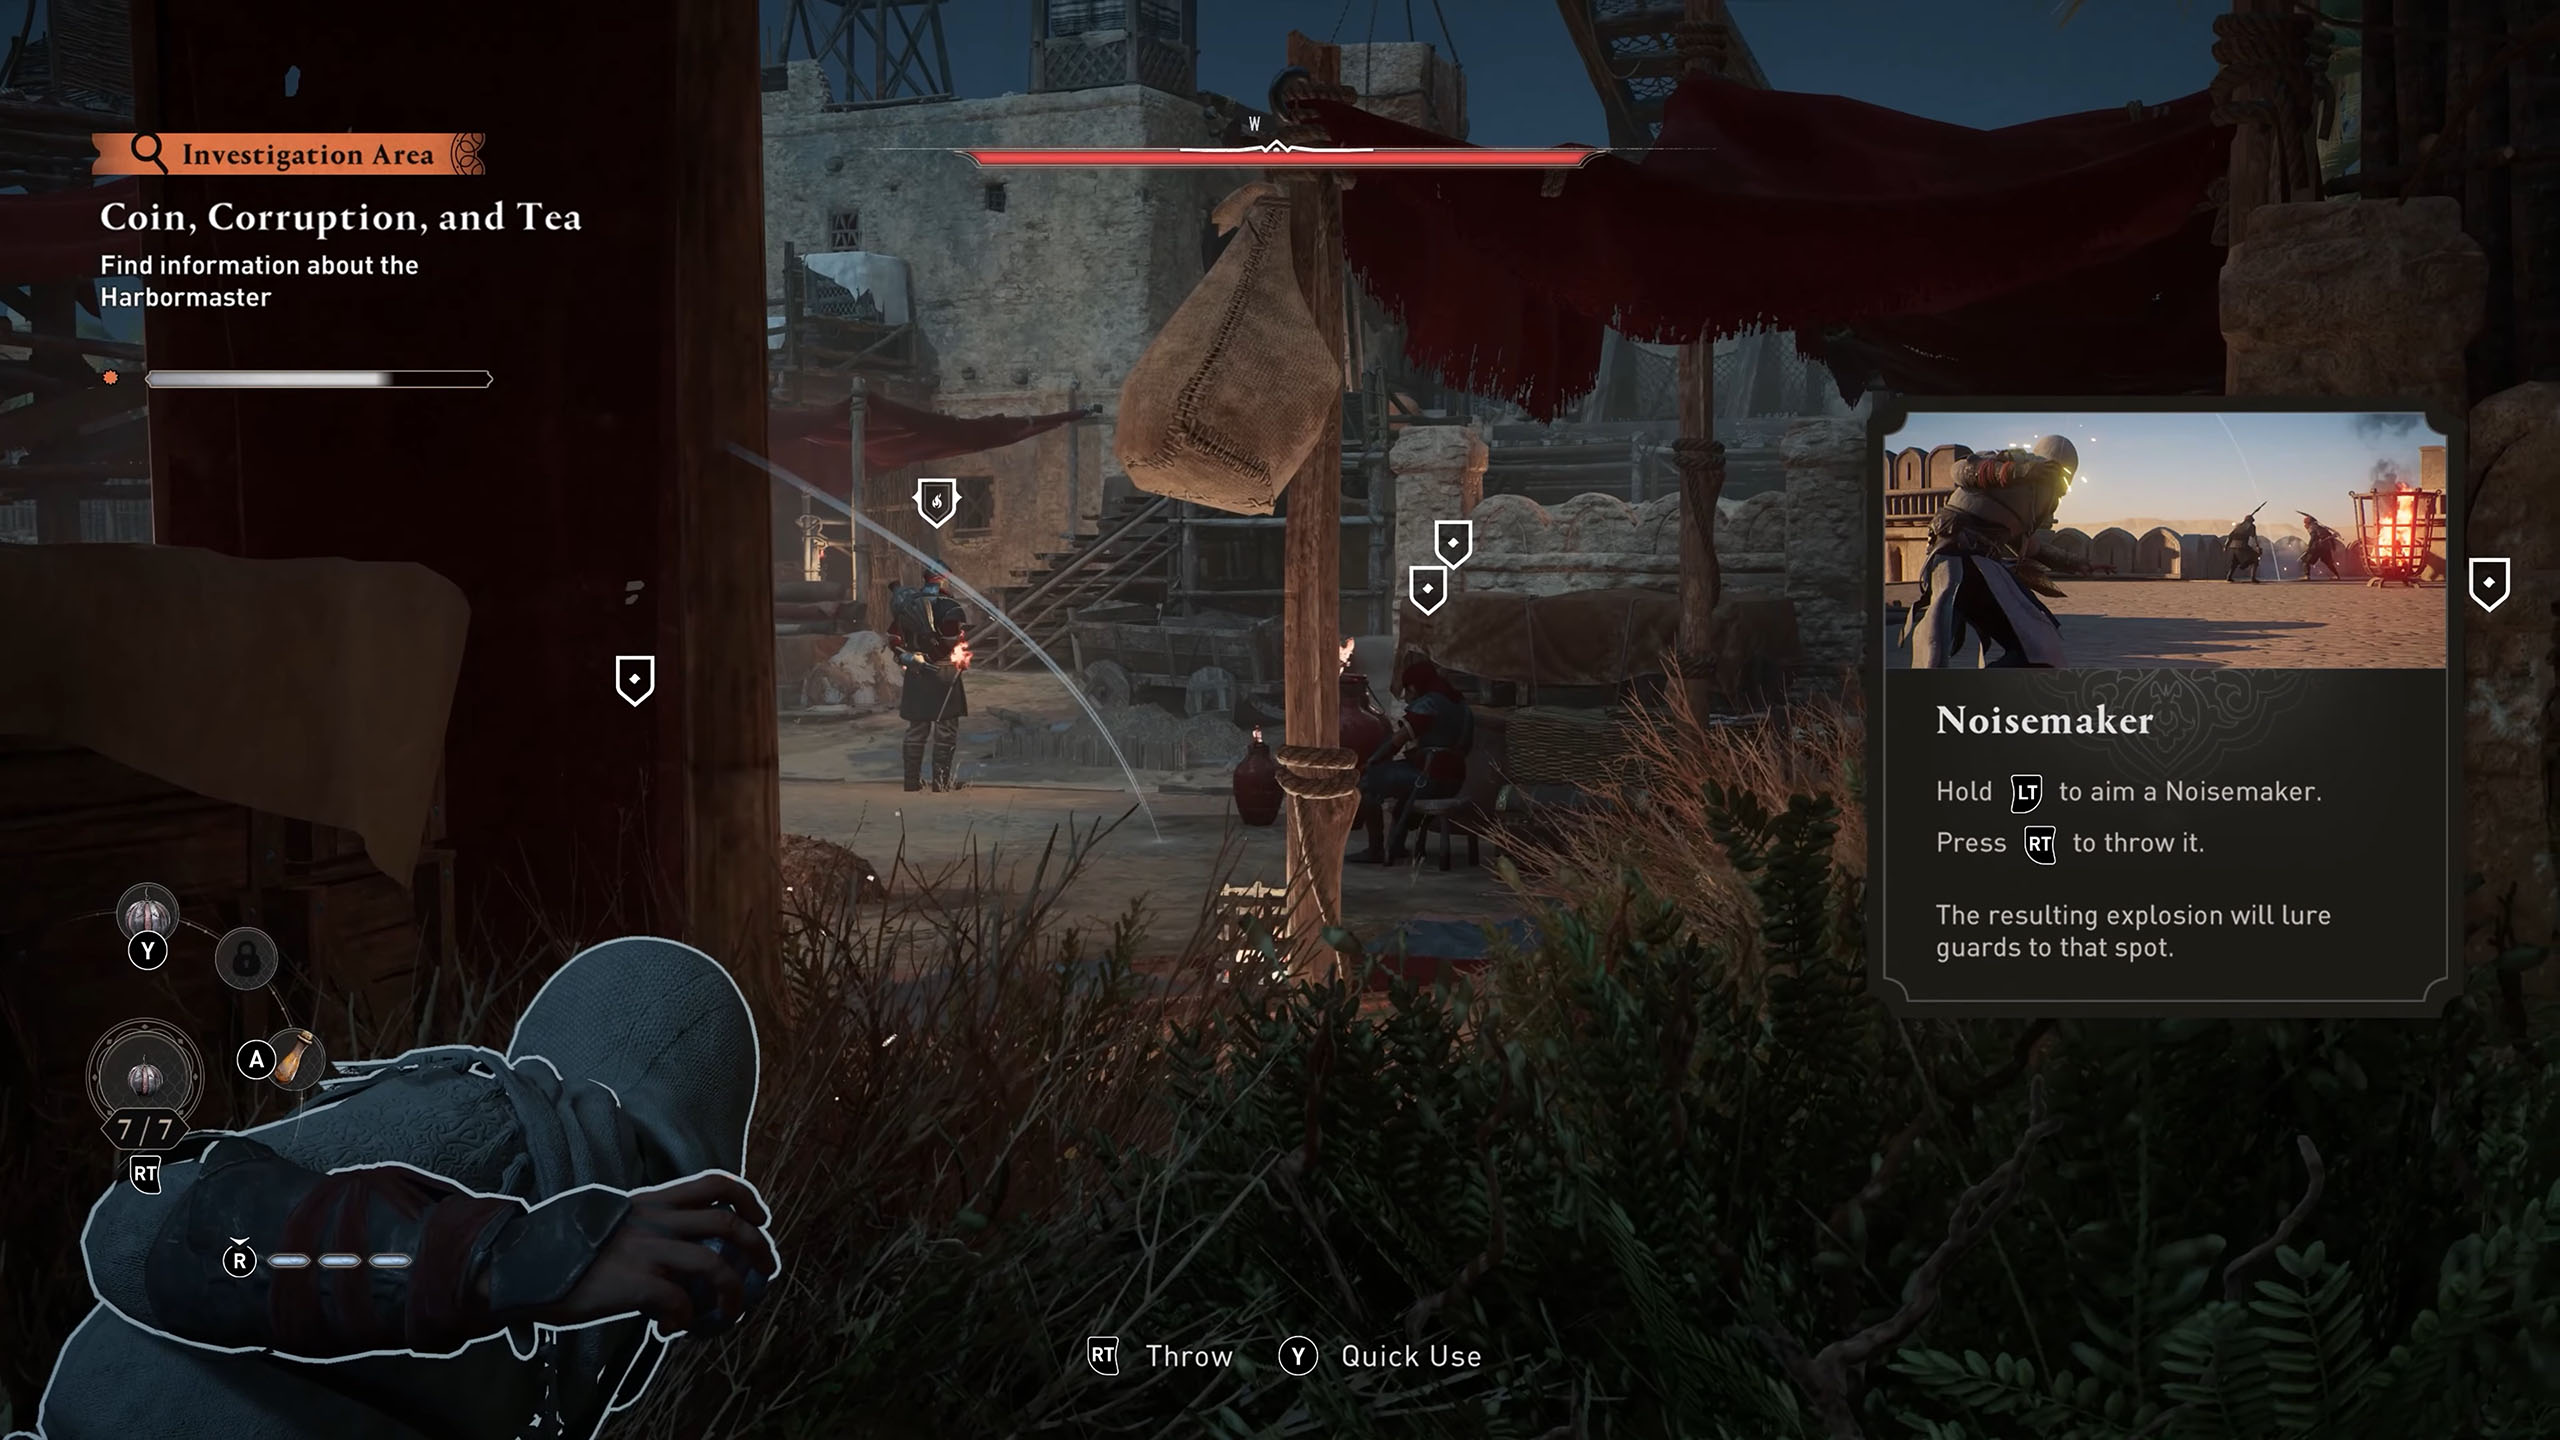 Assassin’s Creed Mirage ist ein Stealth-First-Spiel: Da wir eher Kutte denn Plattenpanzer tragen, halten wir nur wenige Schläge aus und müssen Wege finden Soldaten zu trennen, abzulenken oder einzeln auszuschalten.